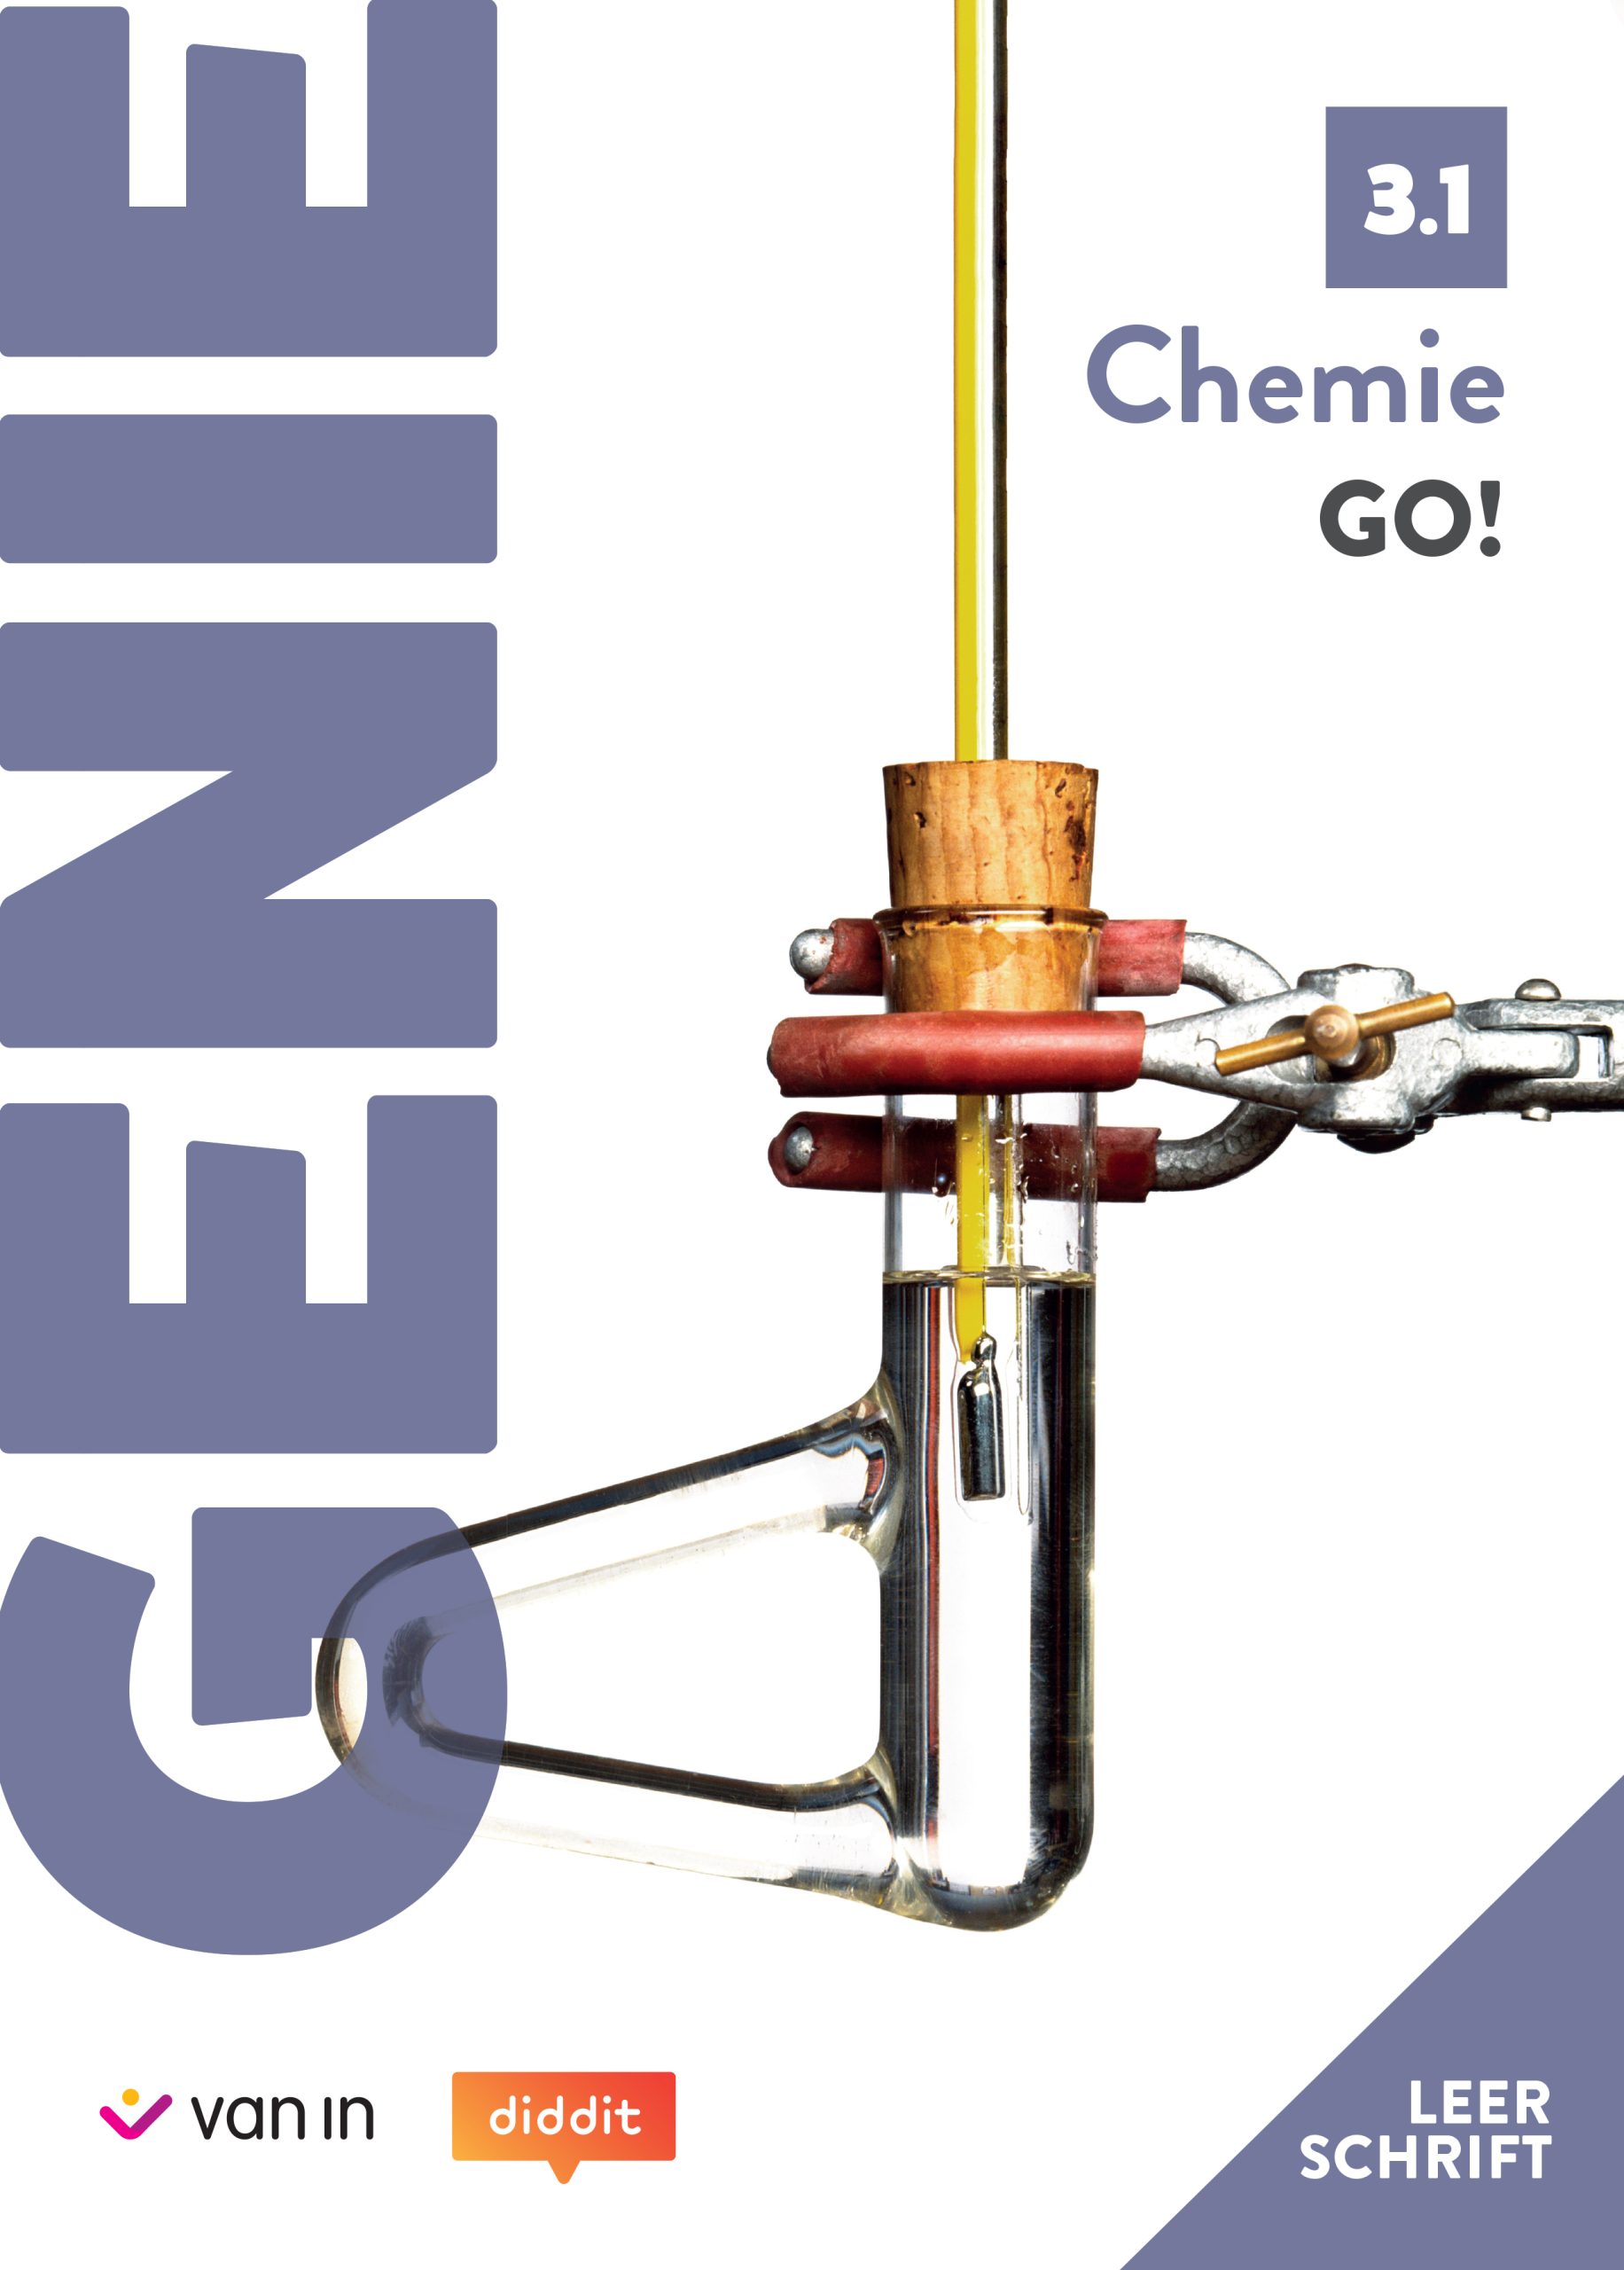 Leerschrift GENIE Chemie GO! 3.1